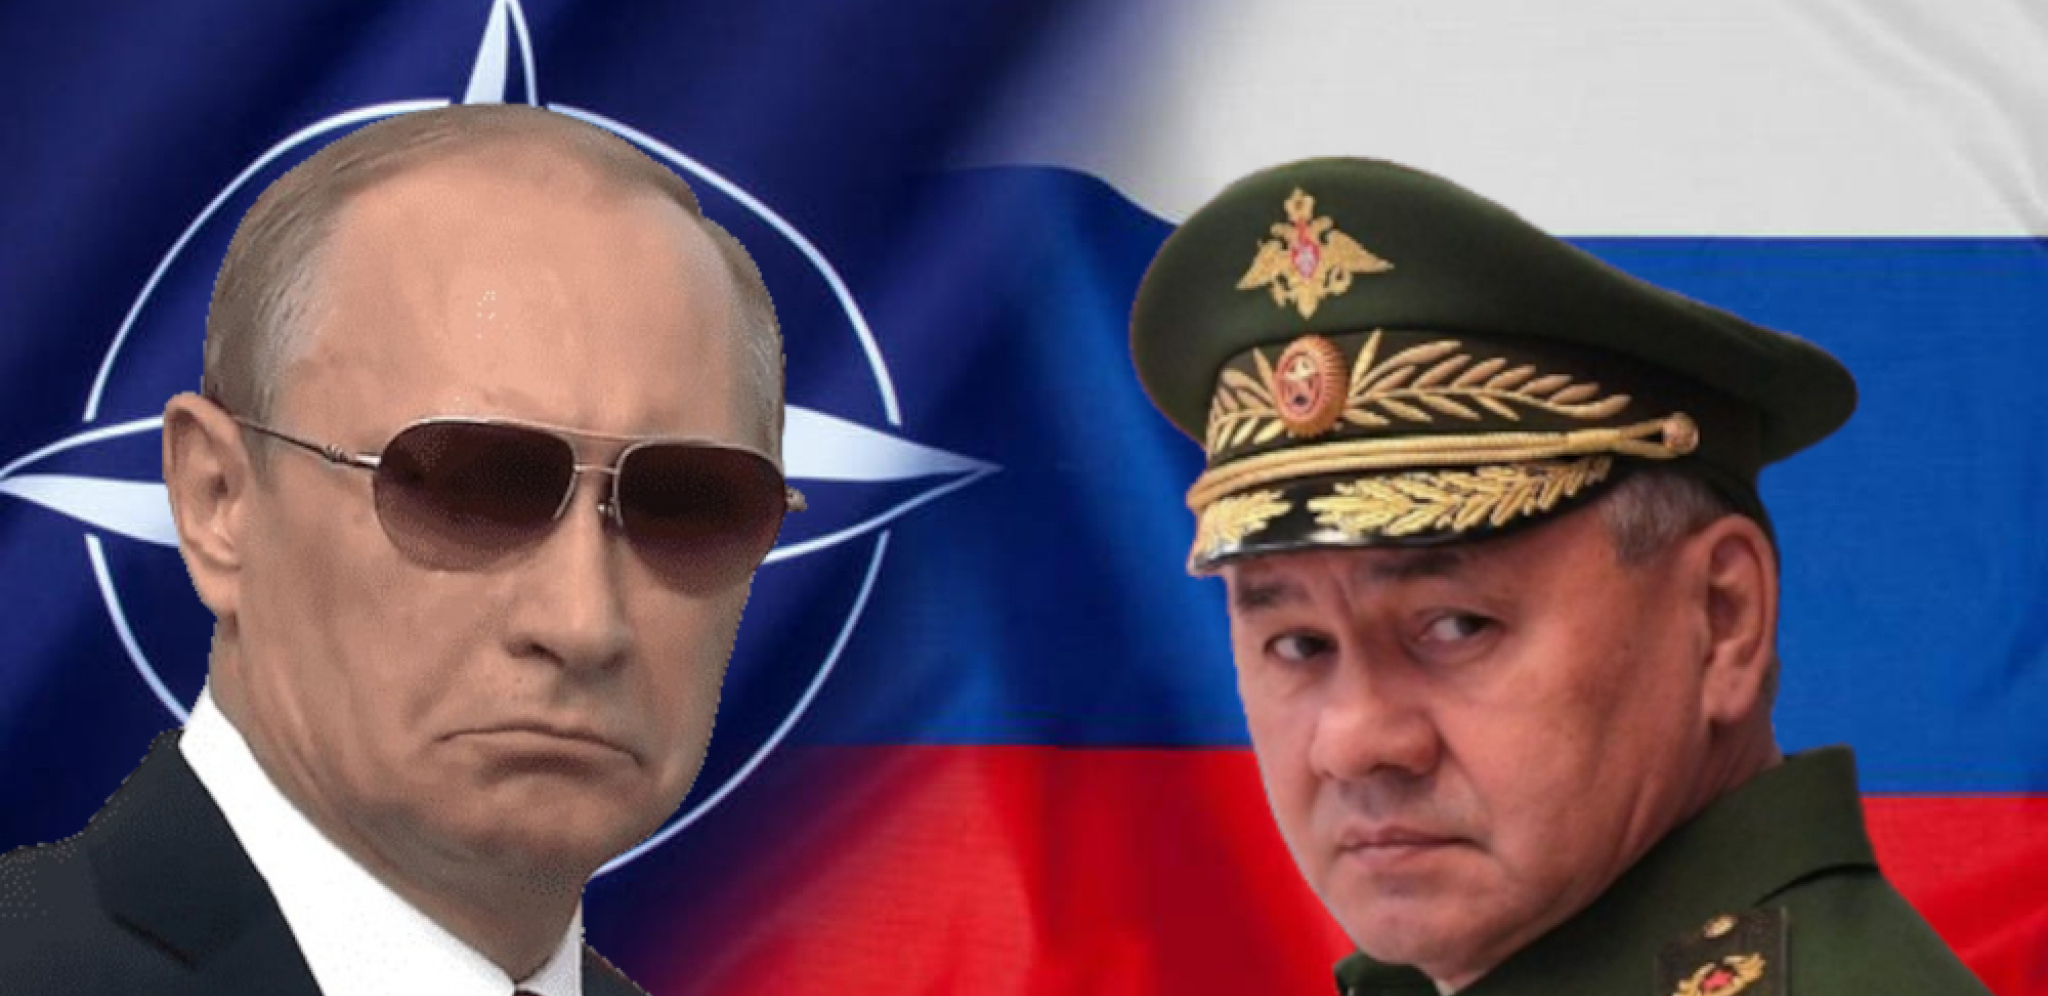 RUSIJA POJAČAVA VOJNU OPERACIJU U UKRAJINI Šojgu je dobio komandu od Putina da uradi jednu stvar